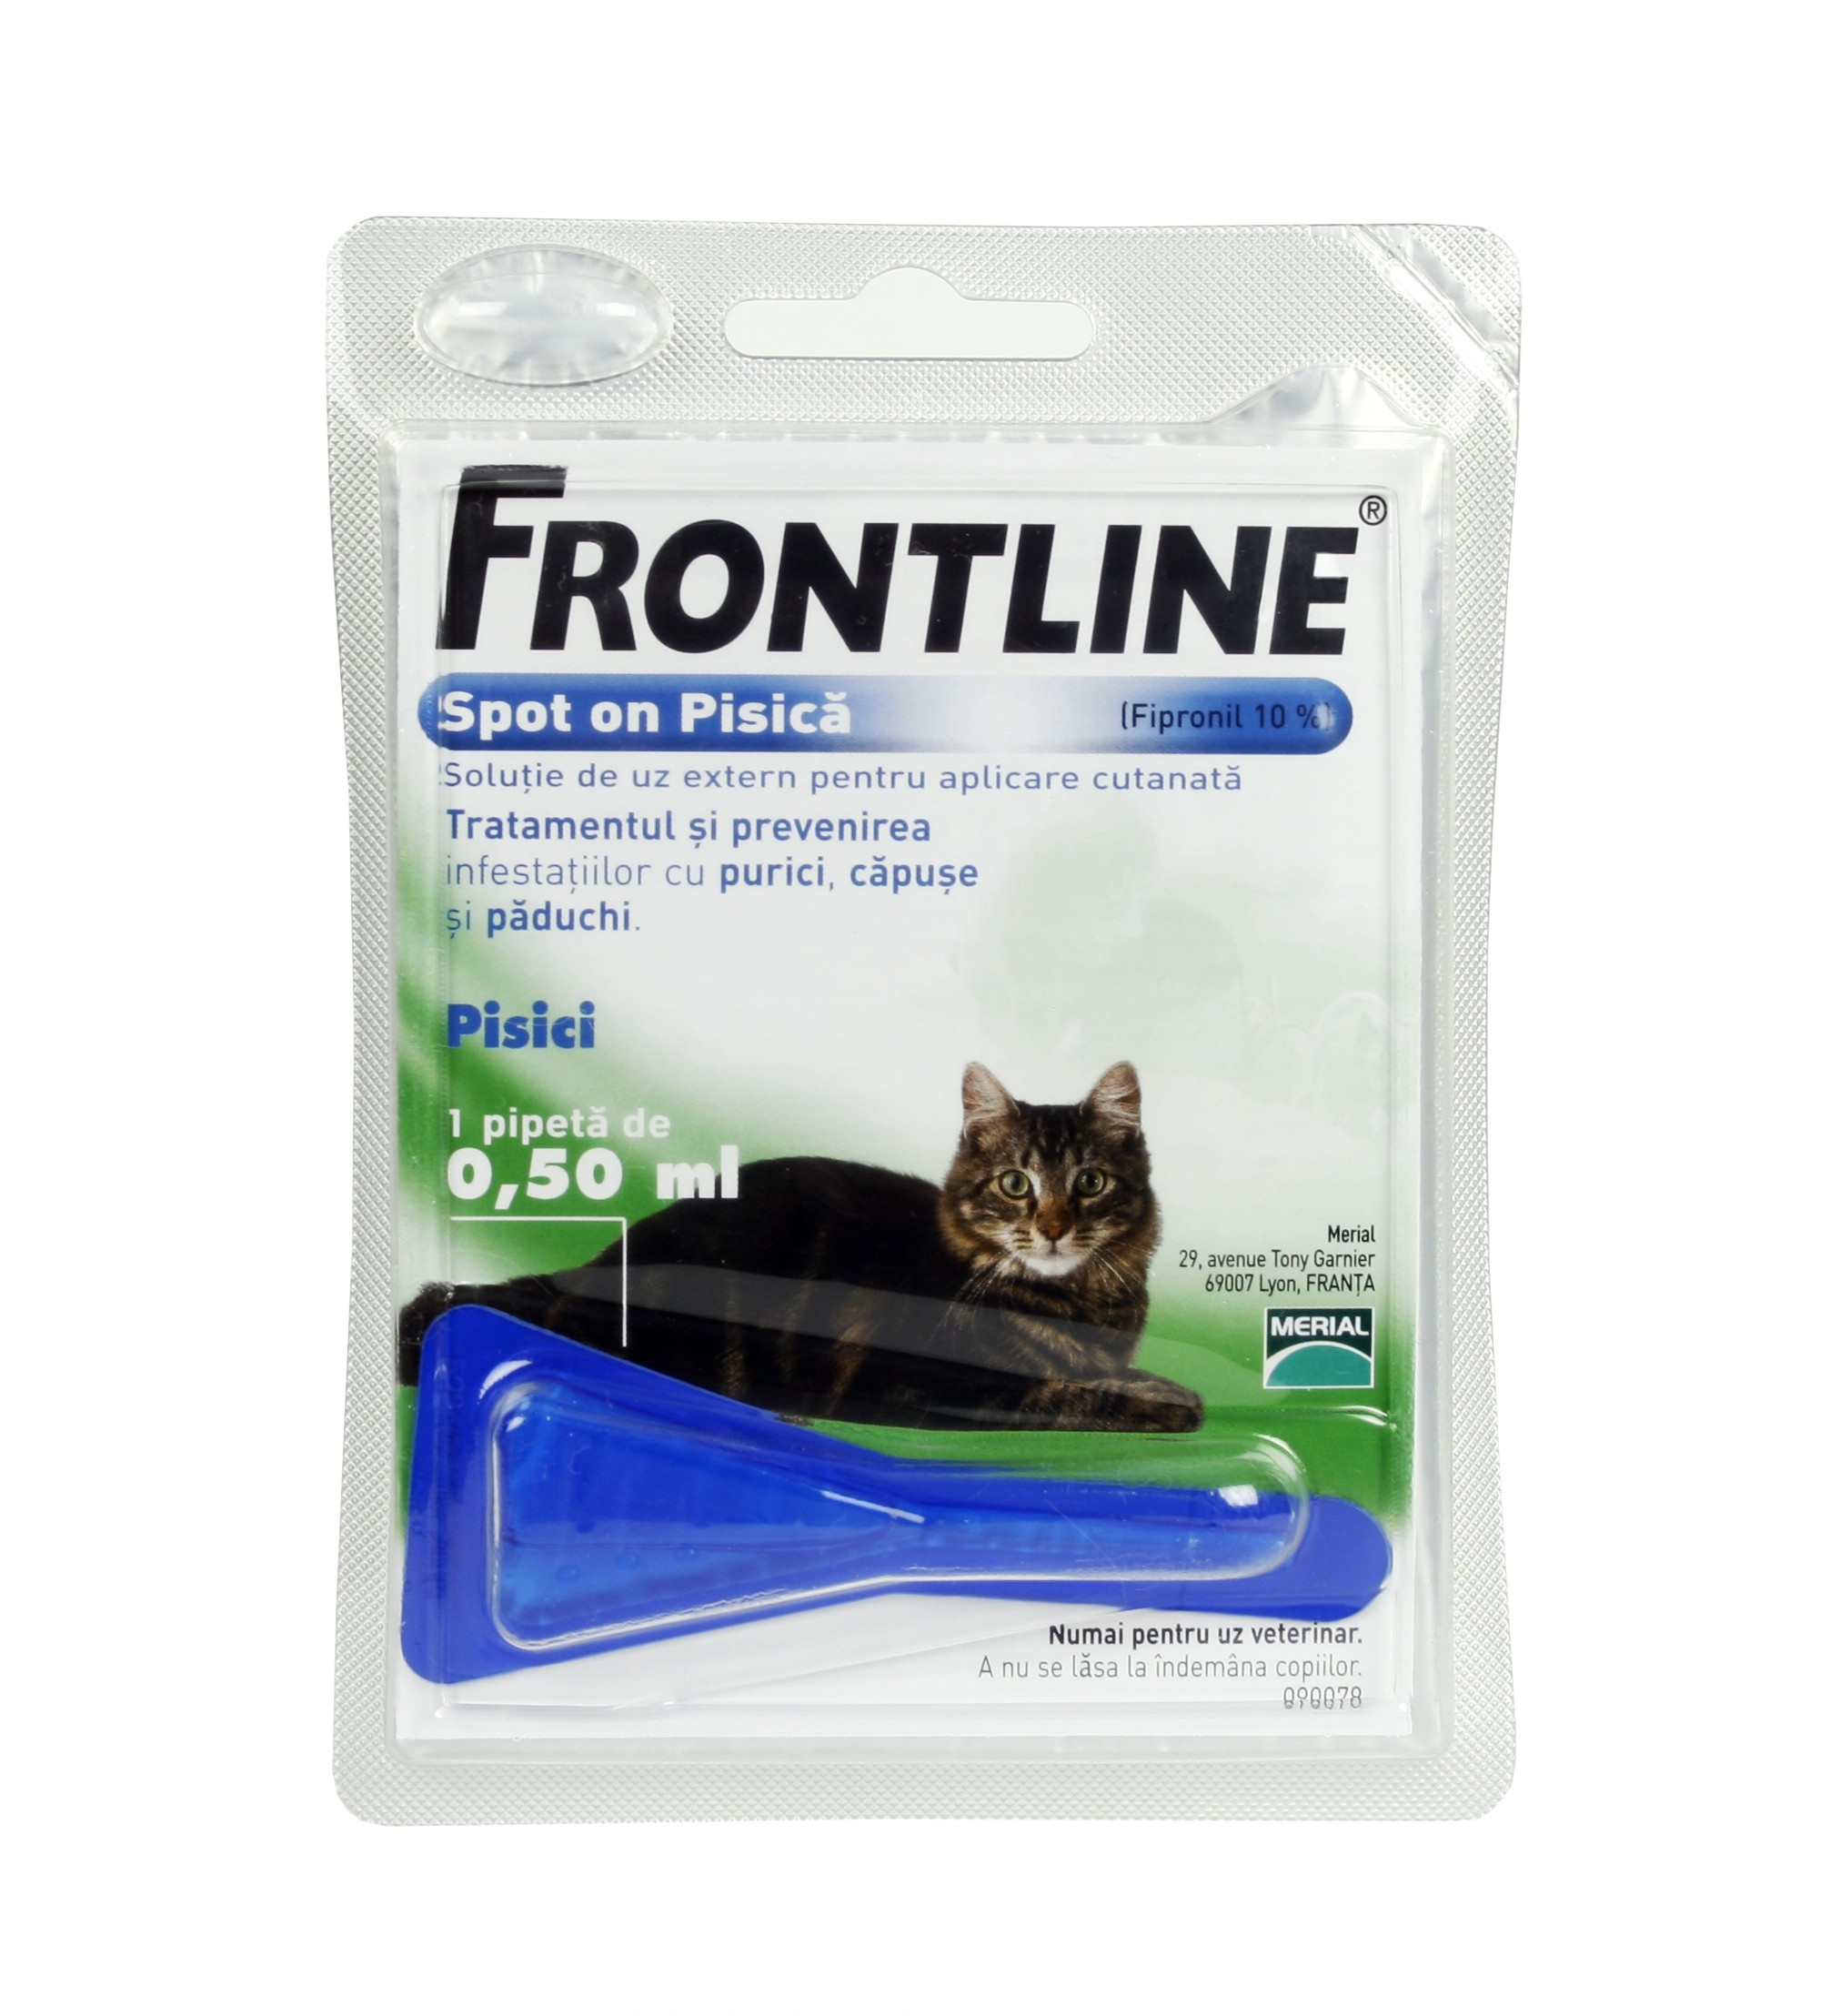 Frontline Spot On Pisica – 1 Pipeta Antiparazitara Merial